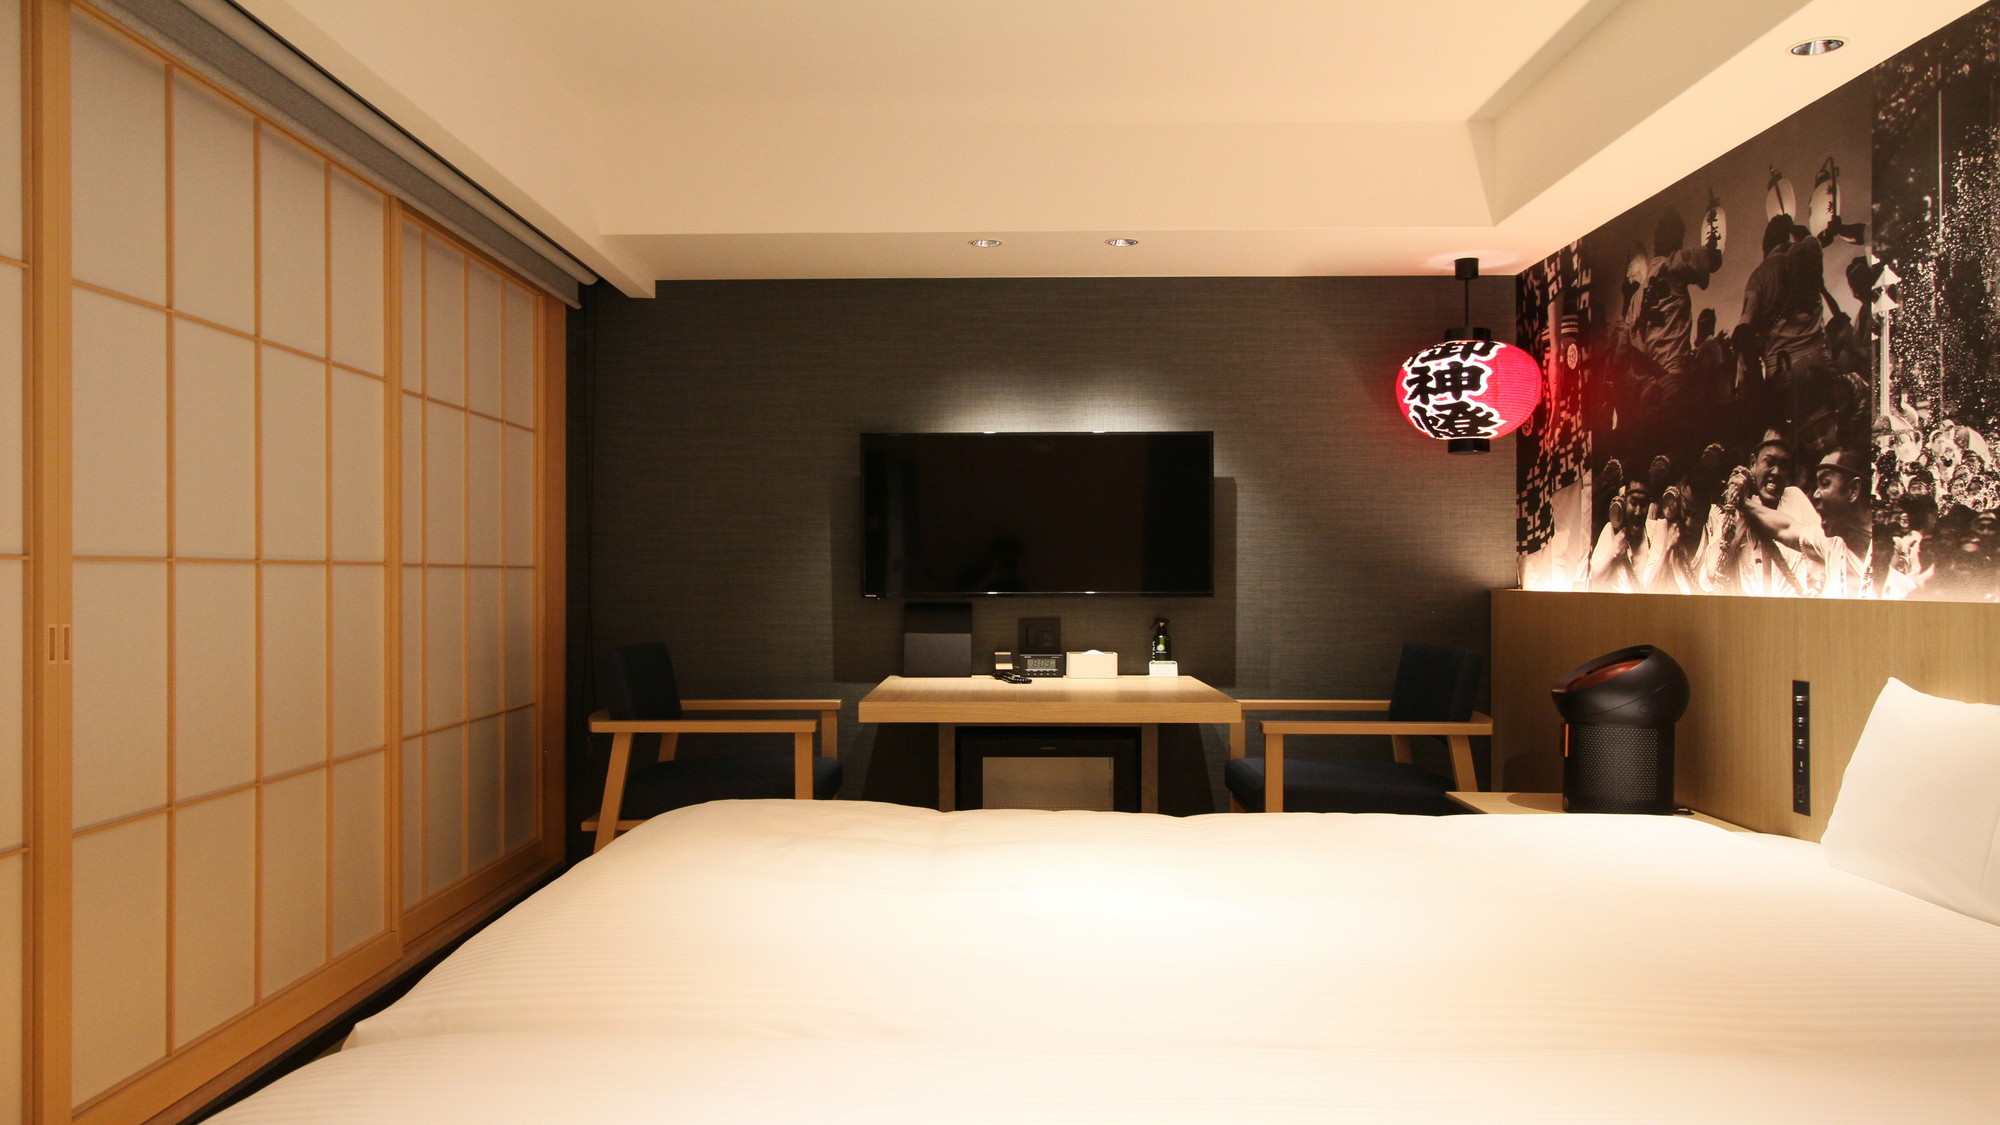 畳ツイン博多提灯、障子、畳と「和」のテイストを感じさせるお部屋です。